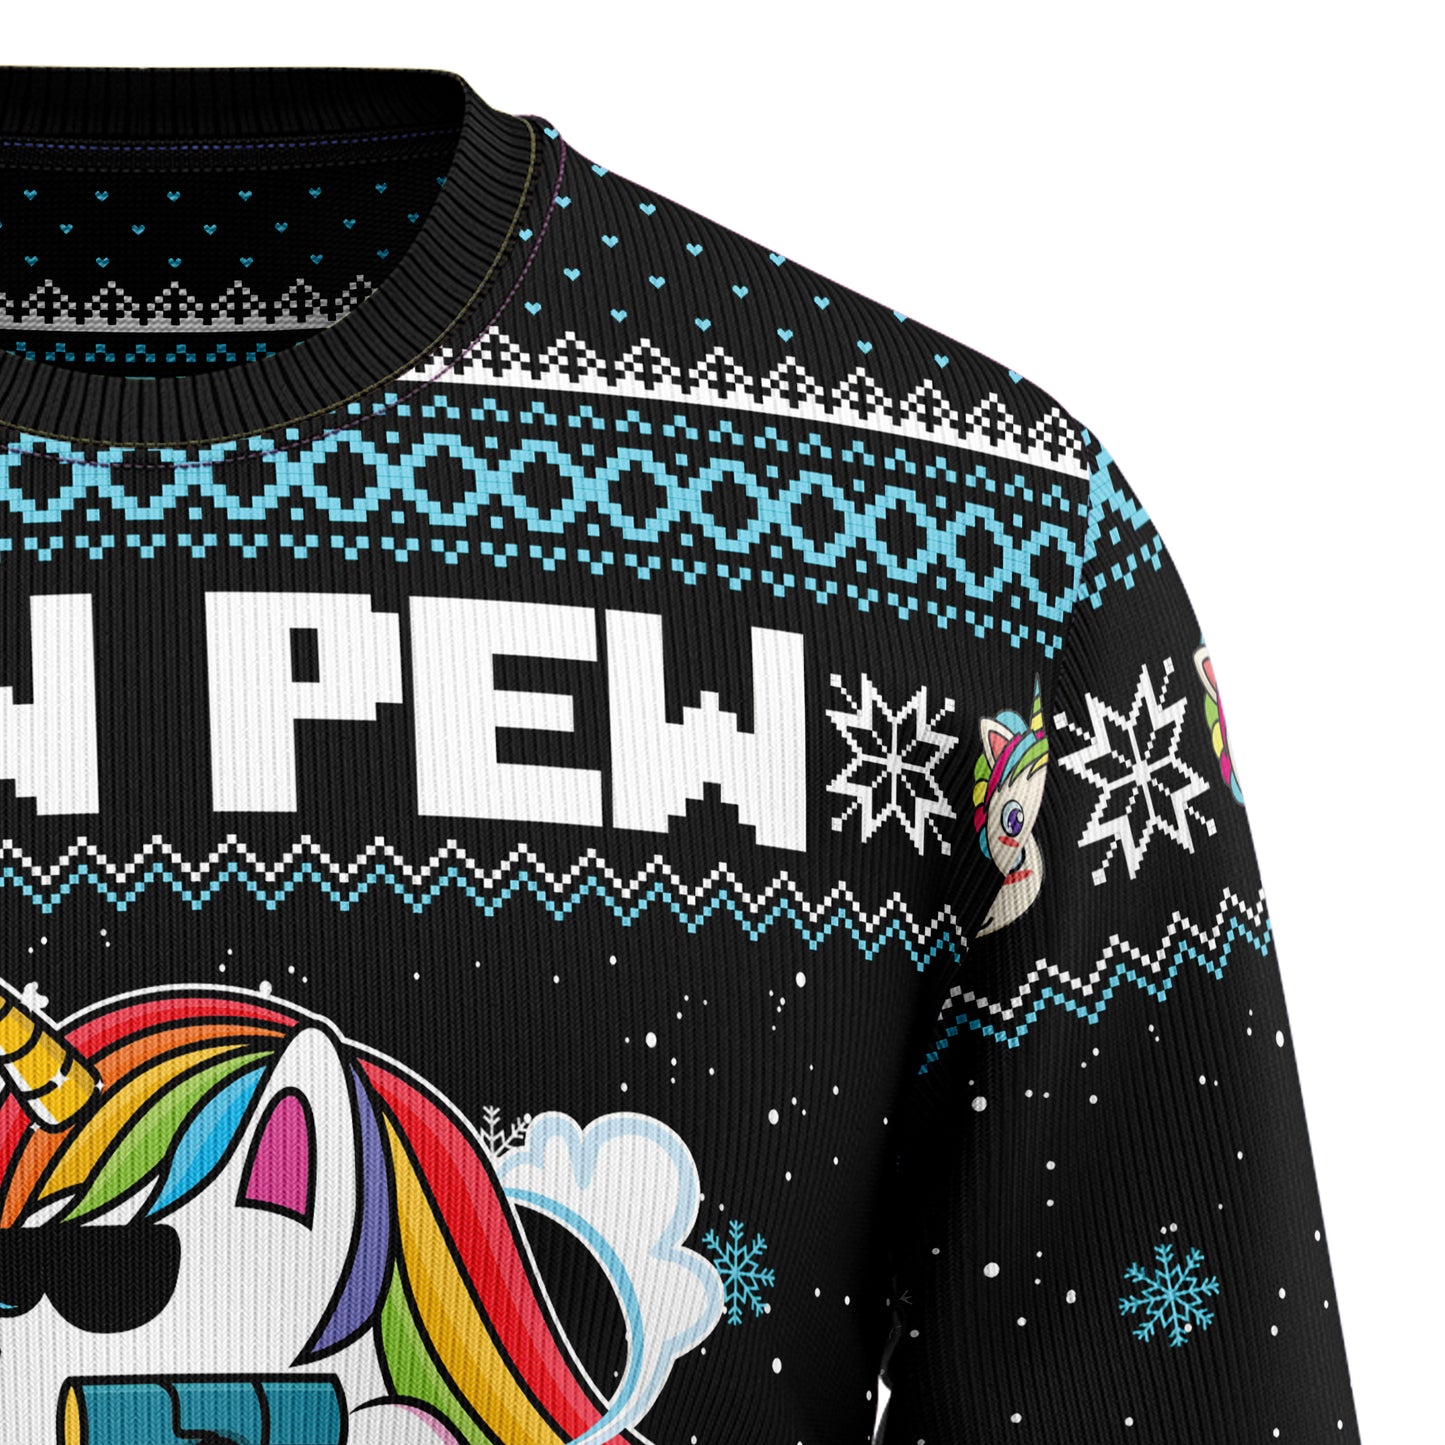 Unicorn Pew Pew TG5114 Ugly Christmas Sweater